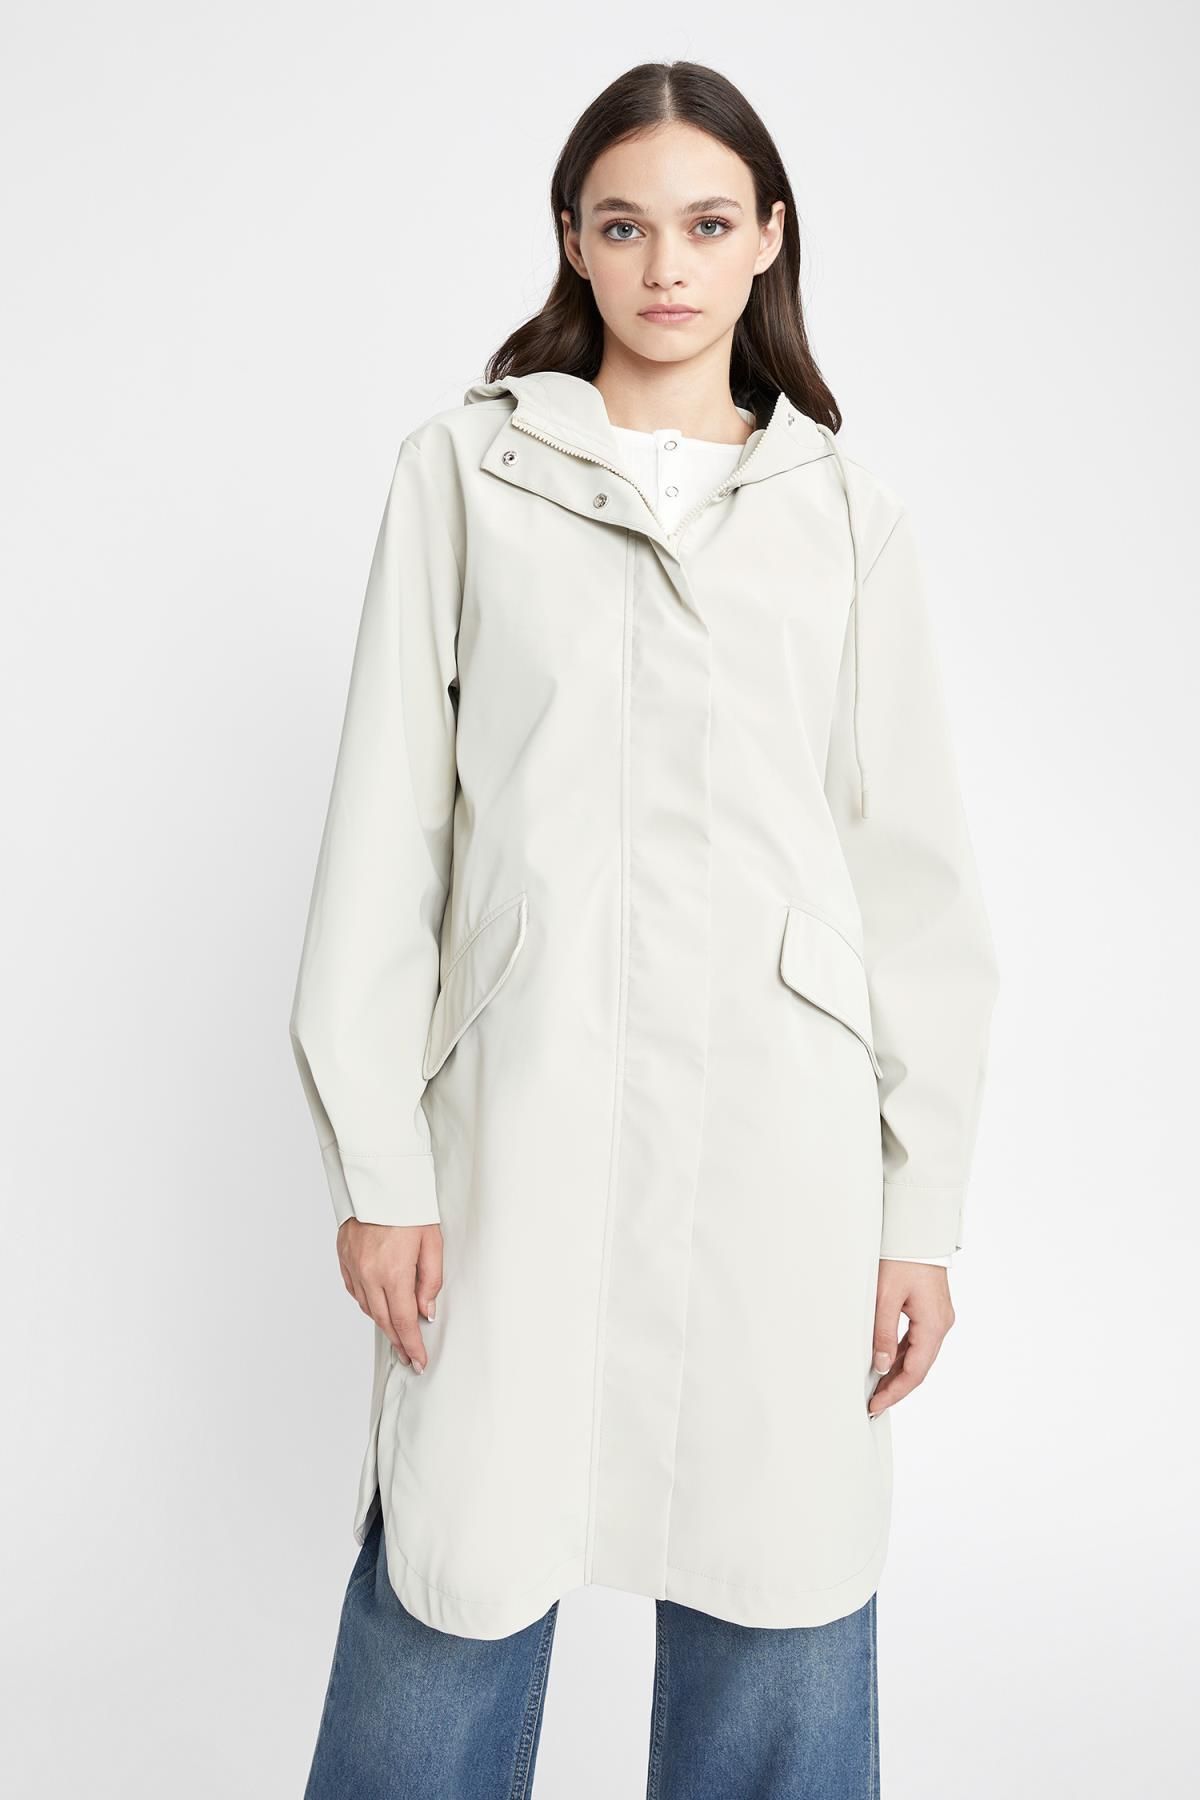 Defacto Waterproof Relax Fit Hooded Raincoat - Trendyol